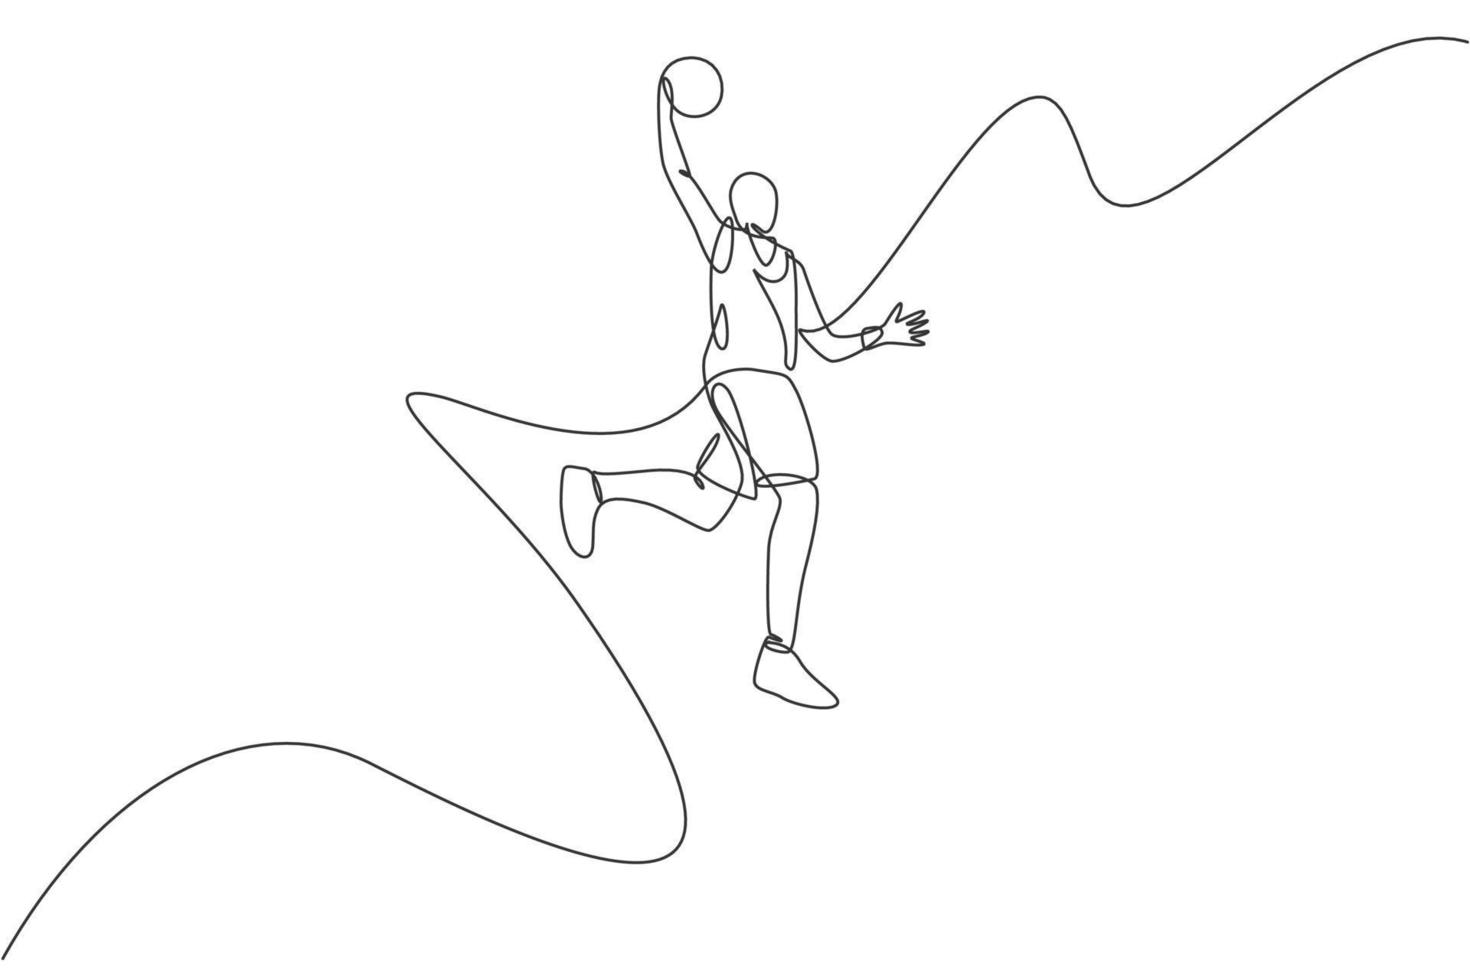 un disegno a linea singola di un giovane energico giocatore di basket che salta lancia l'illustrazione vettoriale della palla. concetto di competizione sportiva. moderno disegno a linea continua per poster di tornei di basket